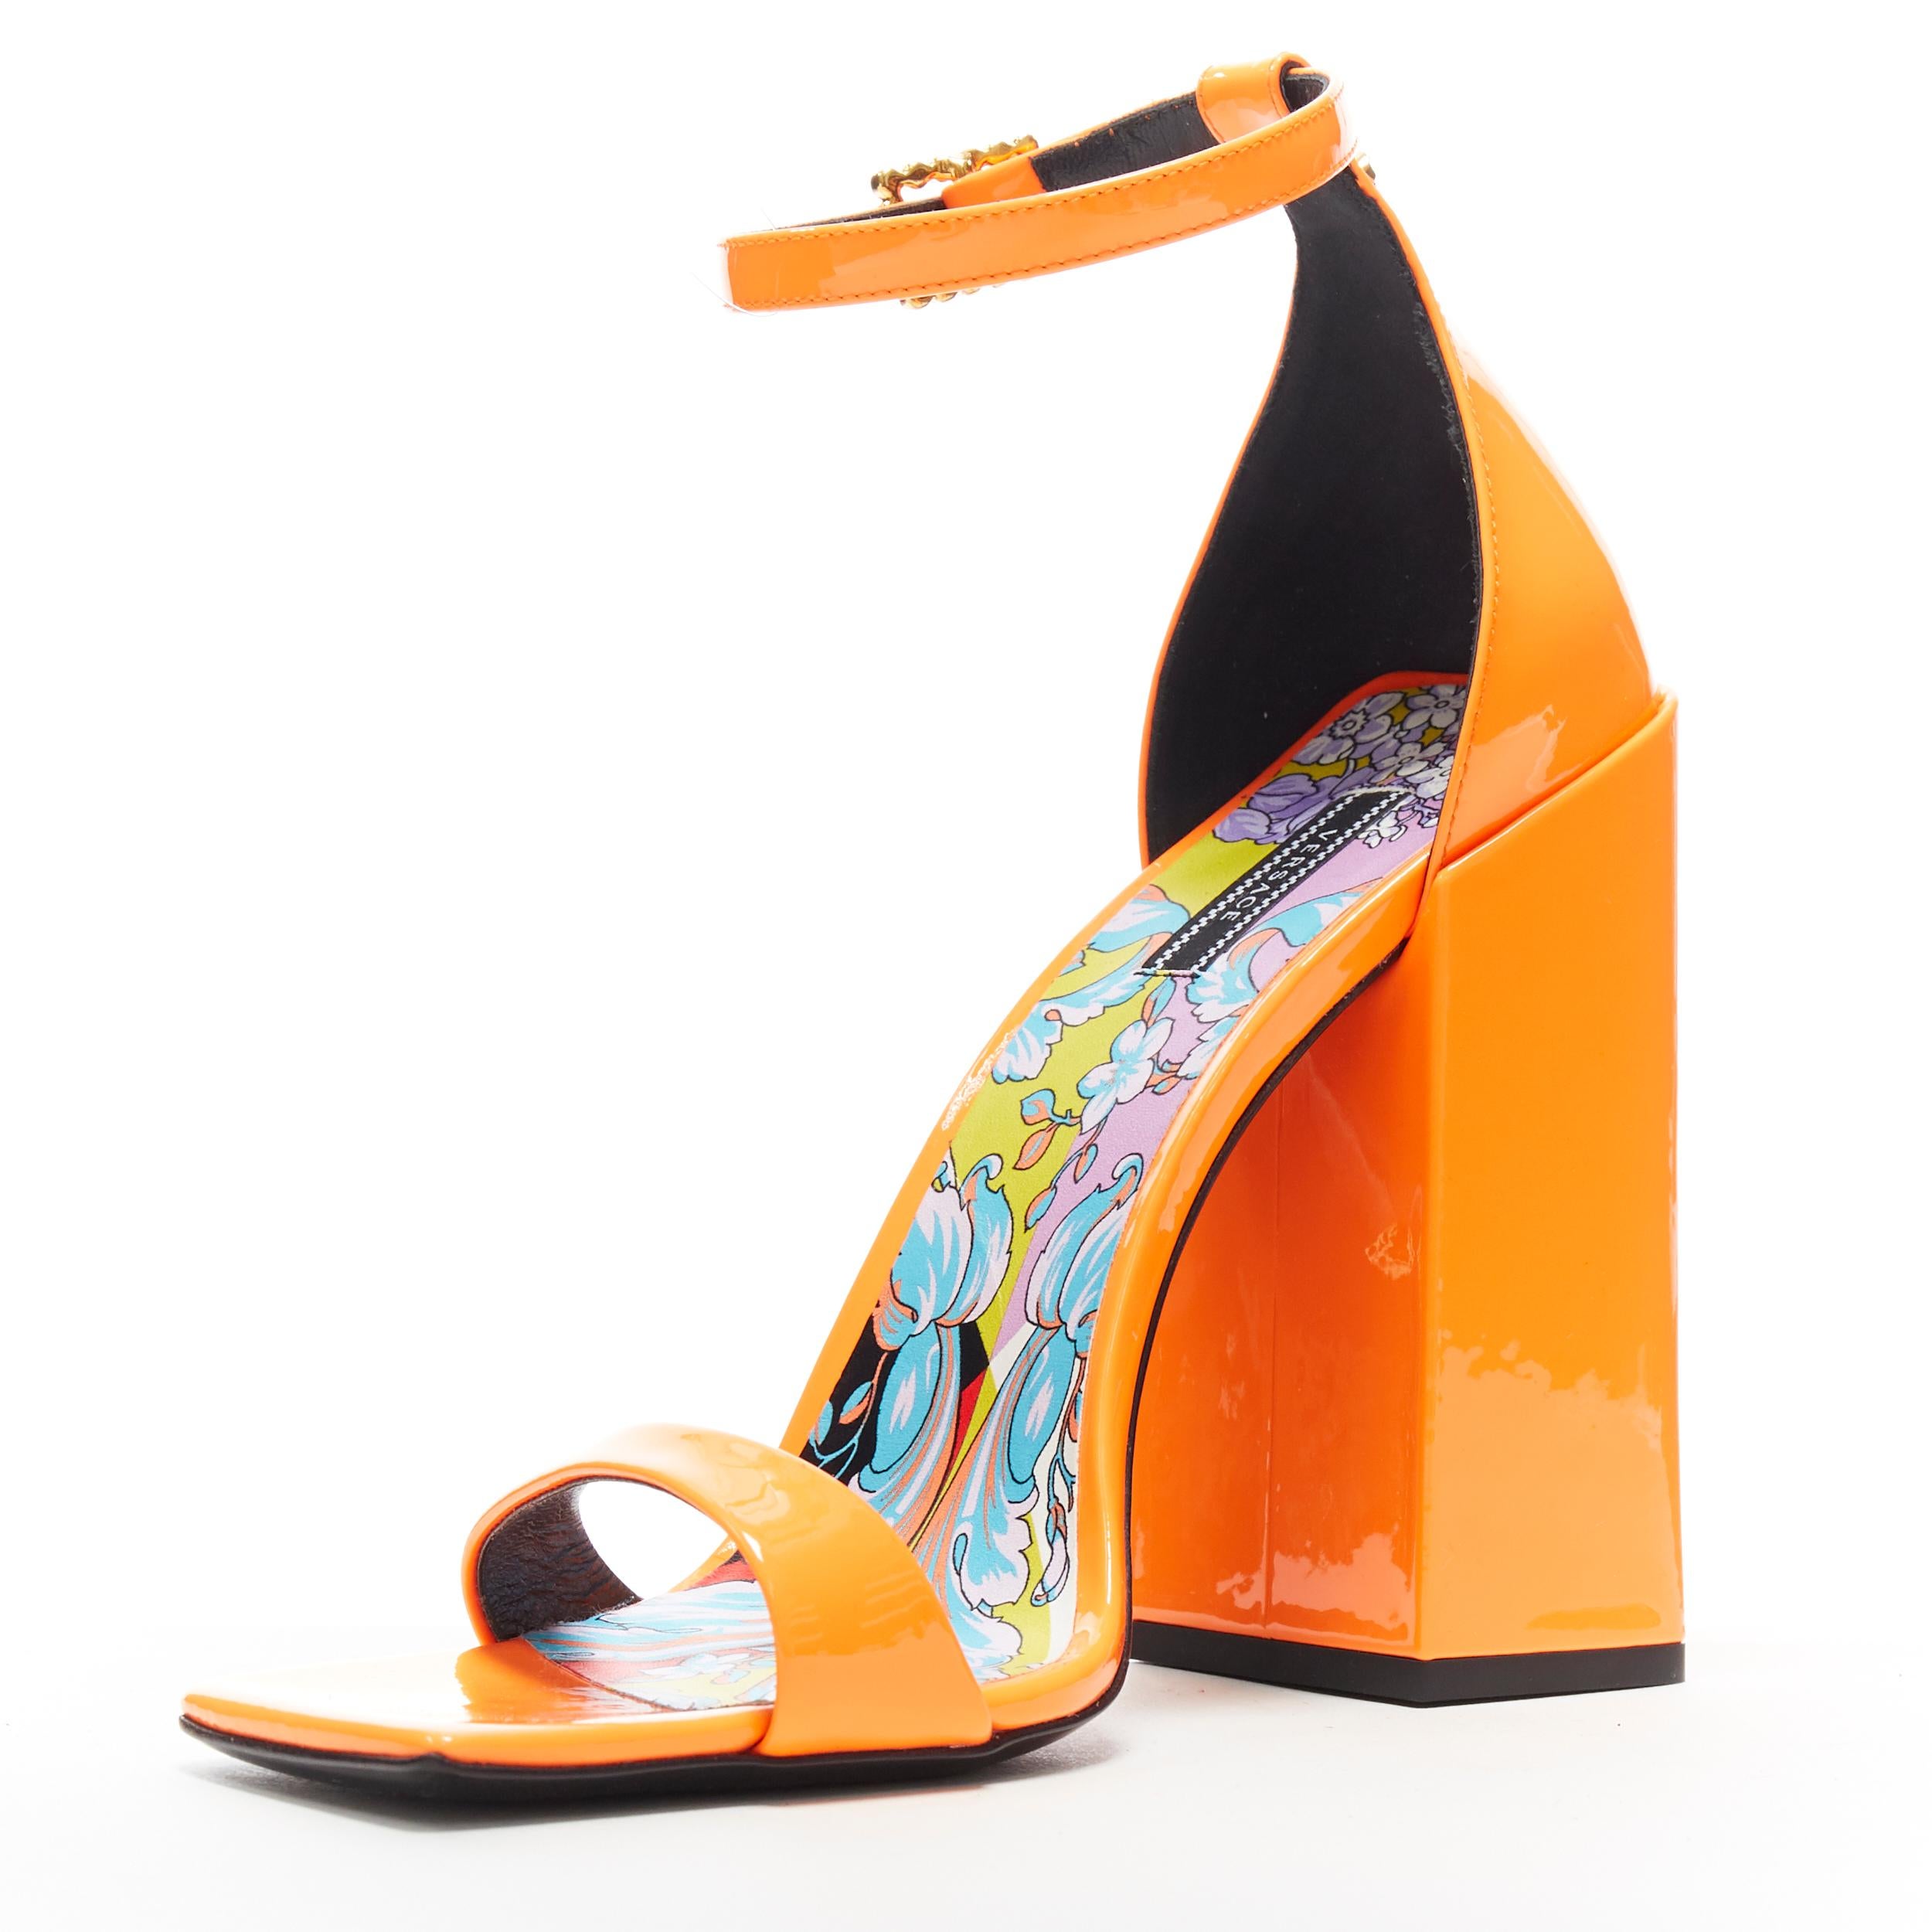 orange versace heels